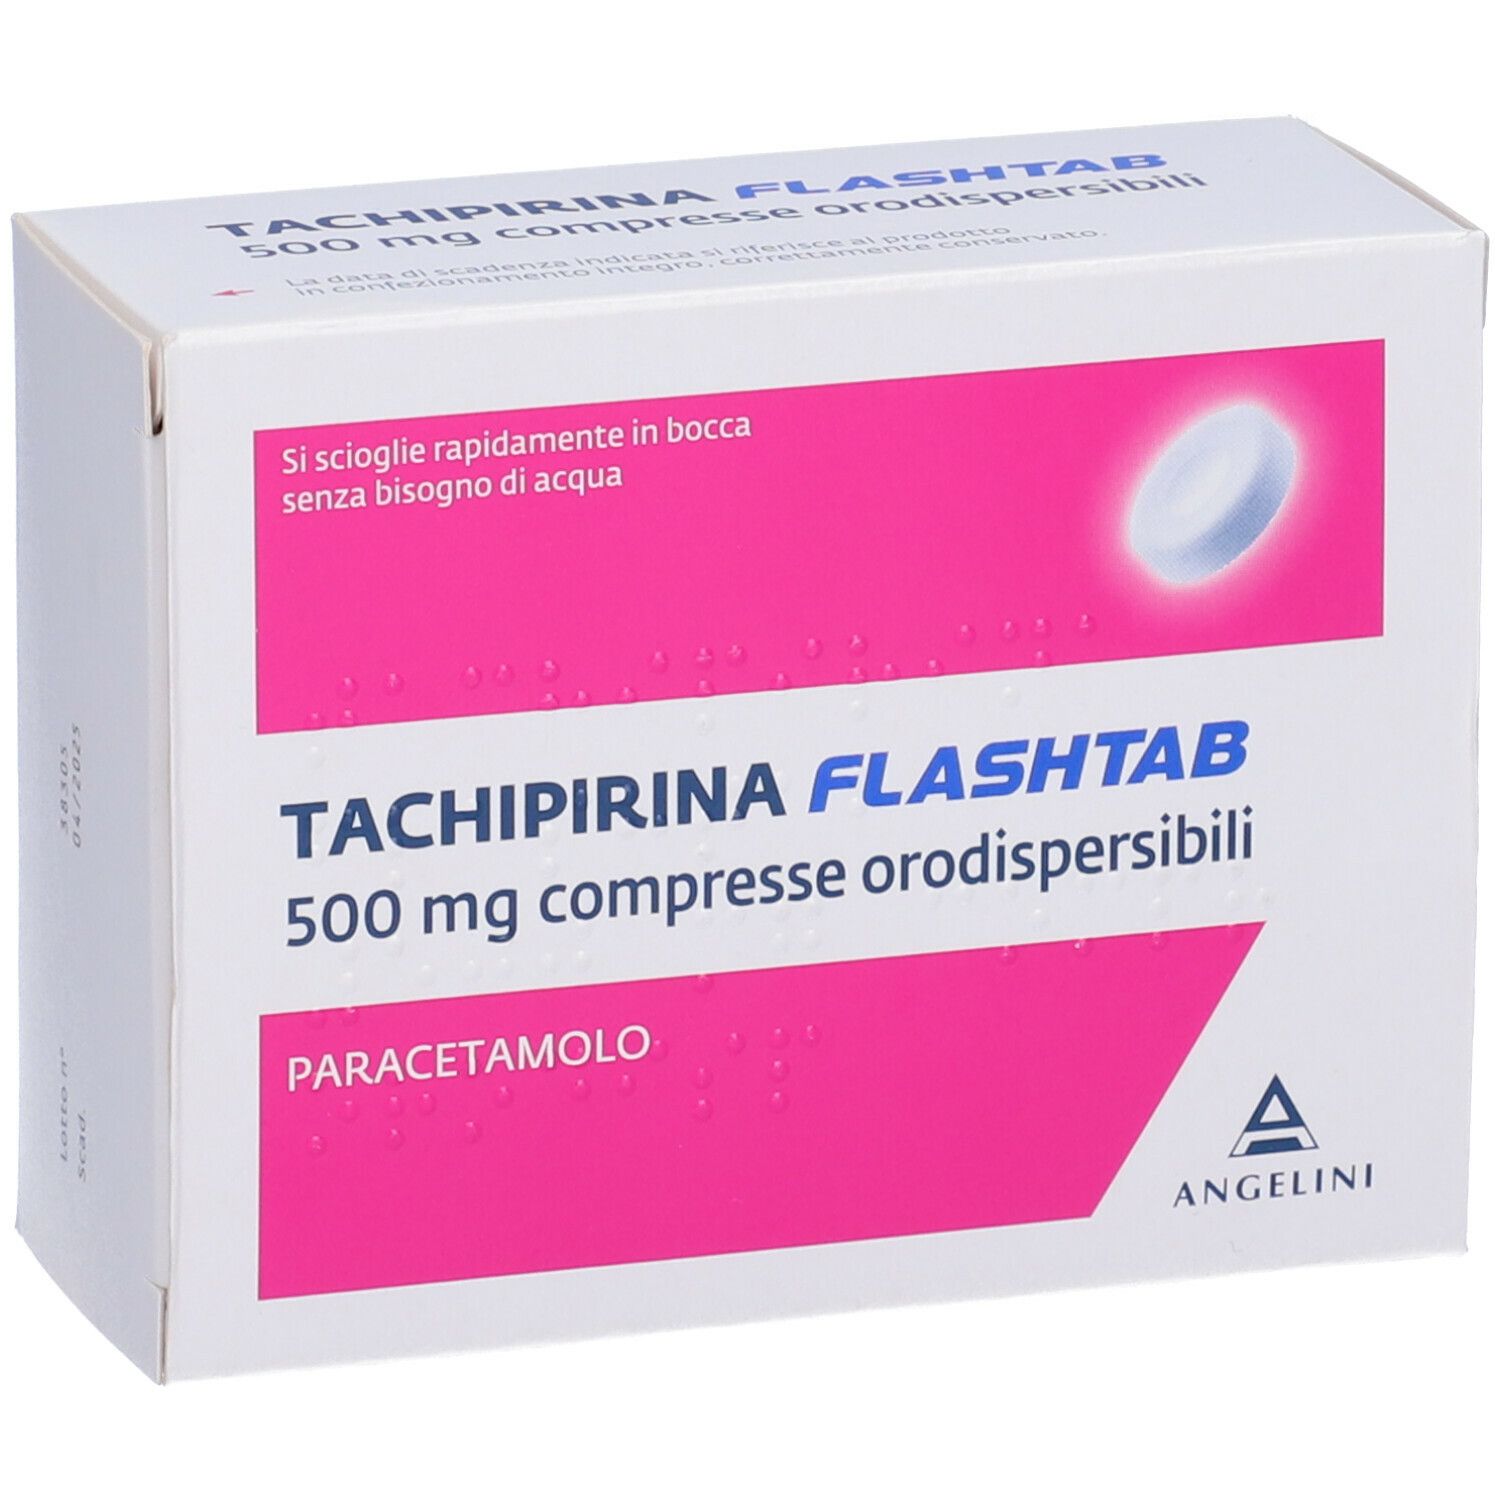 TACHIPIRINA Flashtab 500 mg